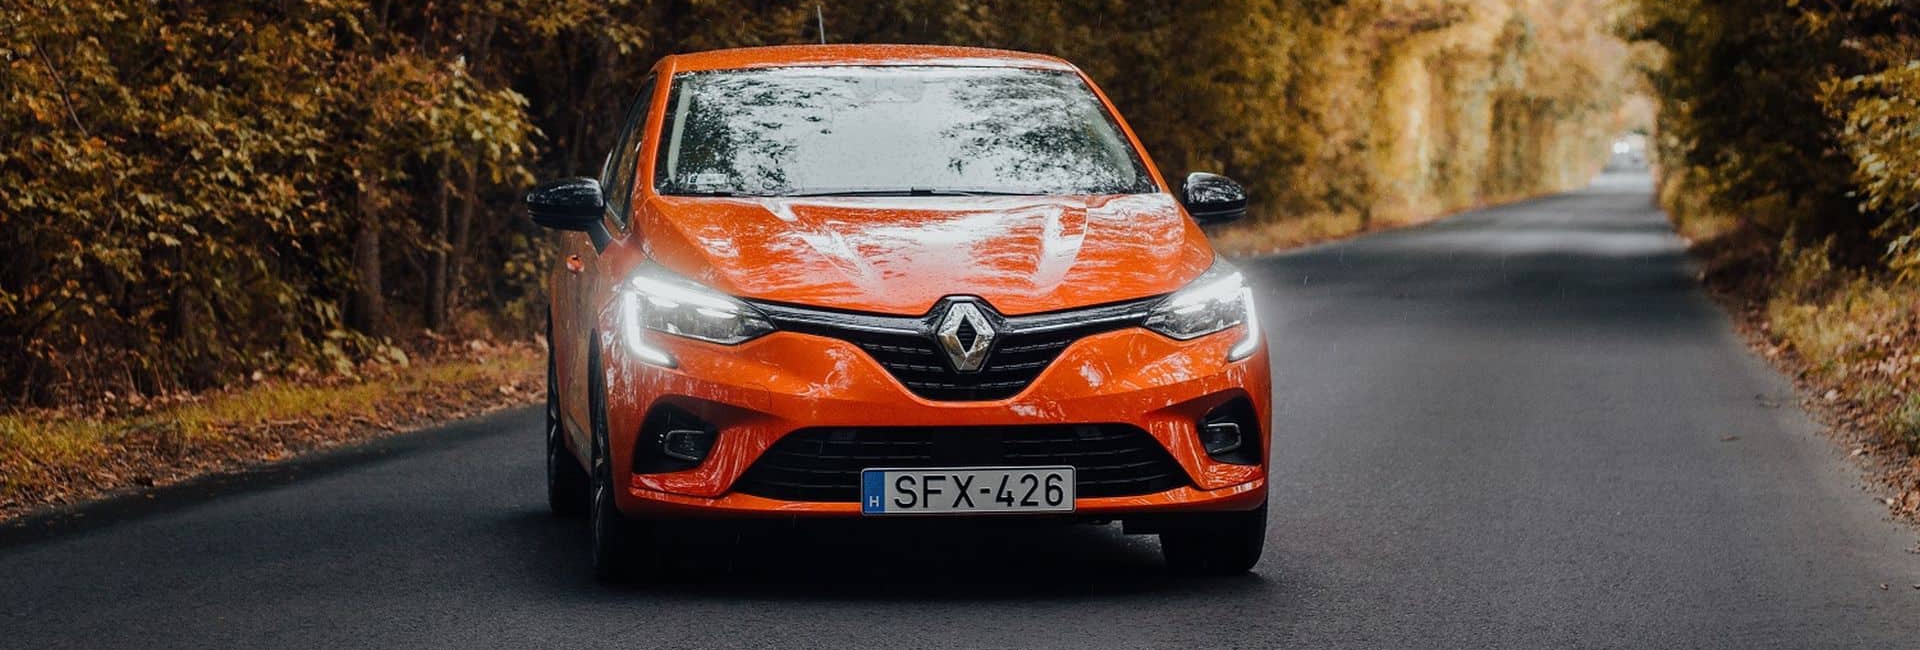 Új Renault hibrid modellek